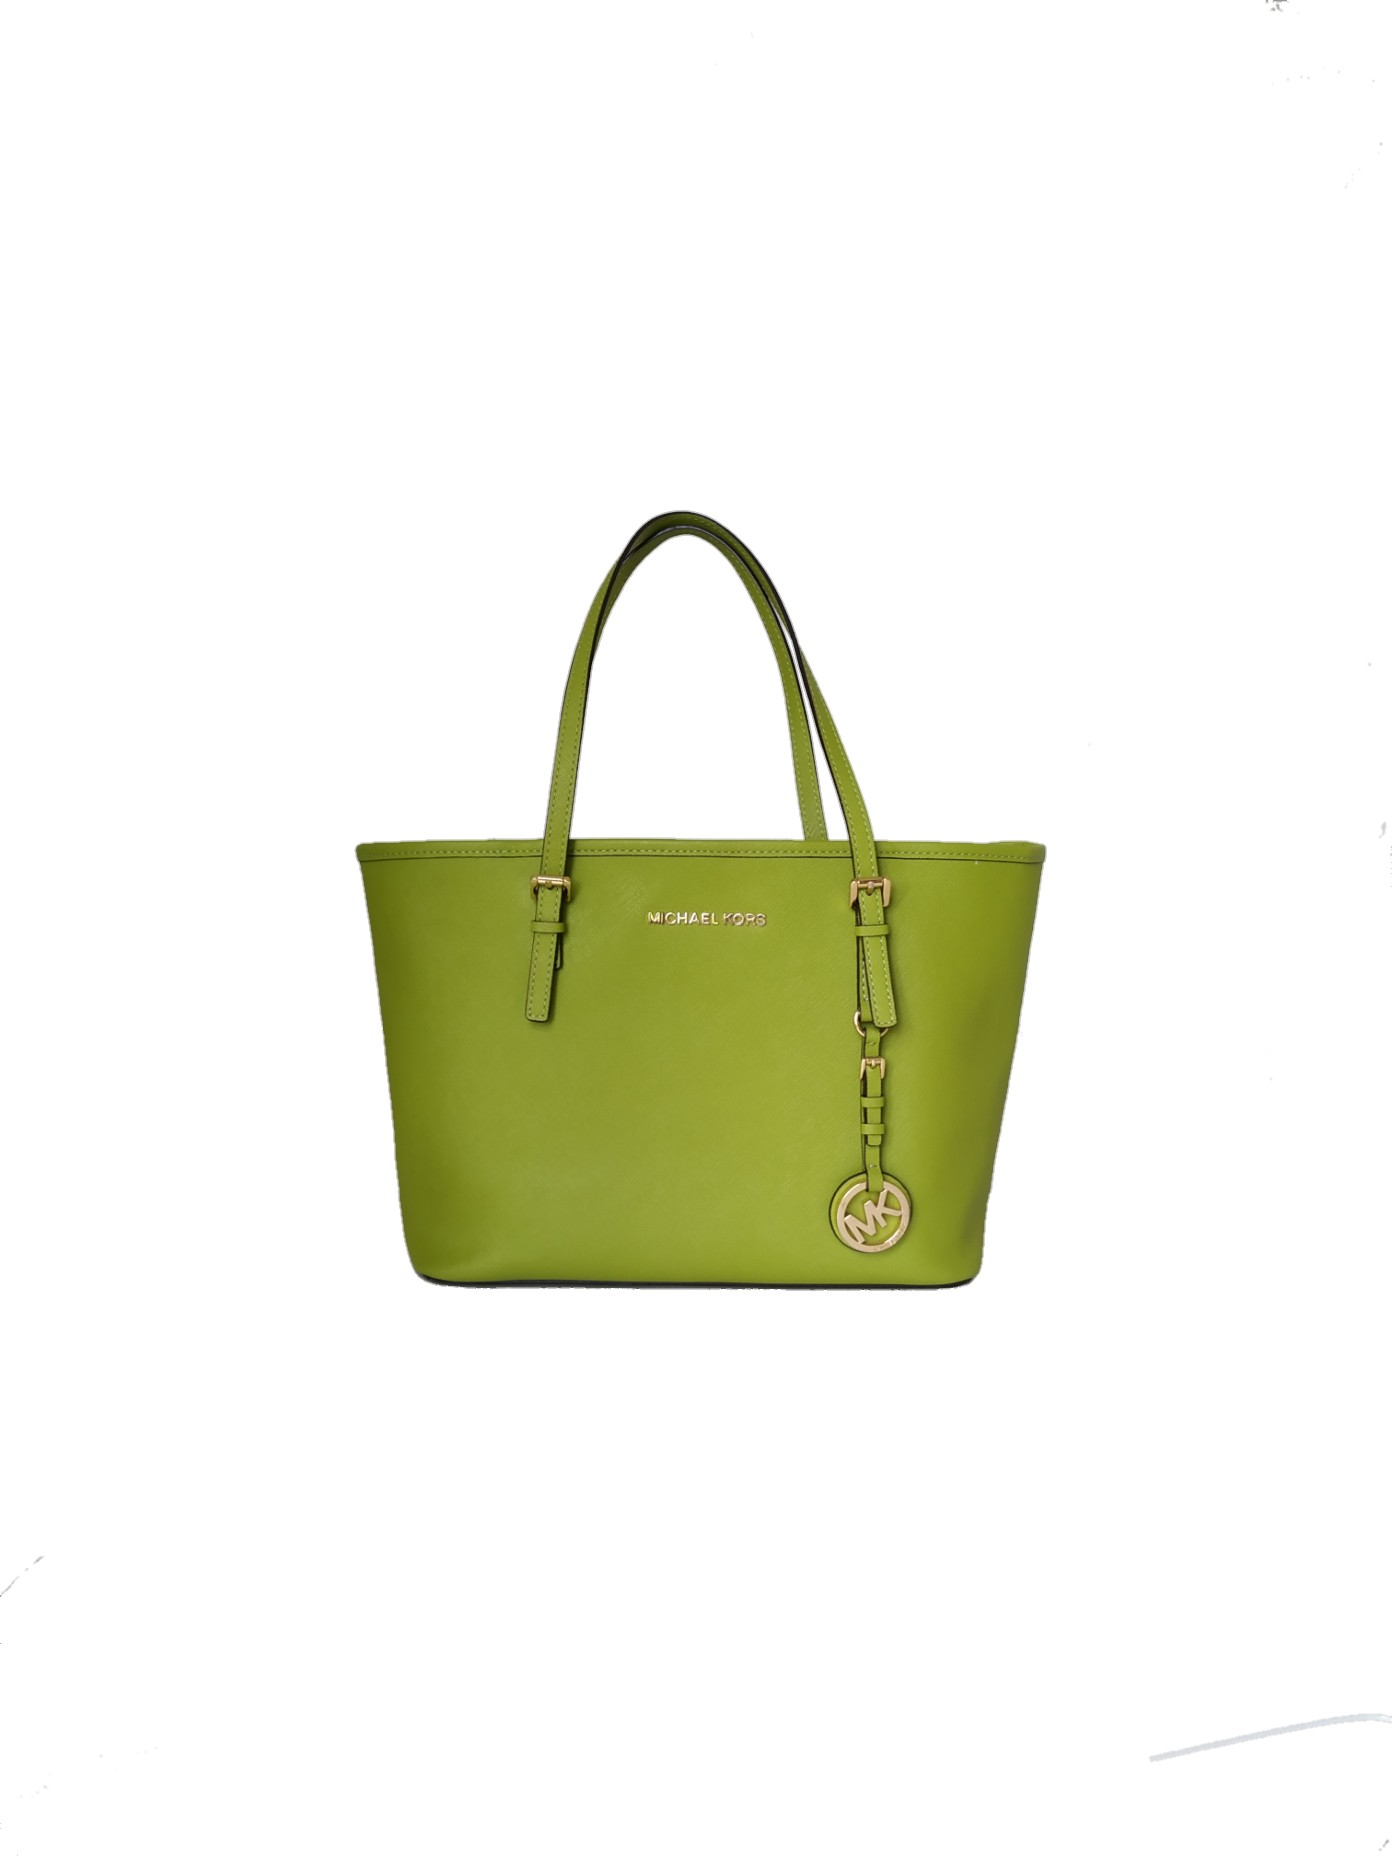 Descubrir 39+ imagen bright green michael kors purse